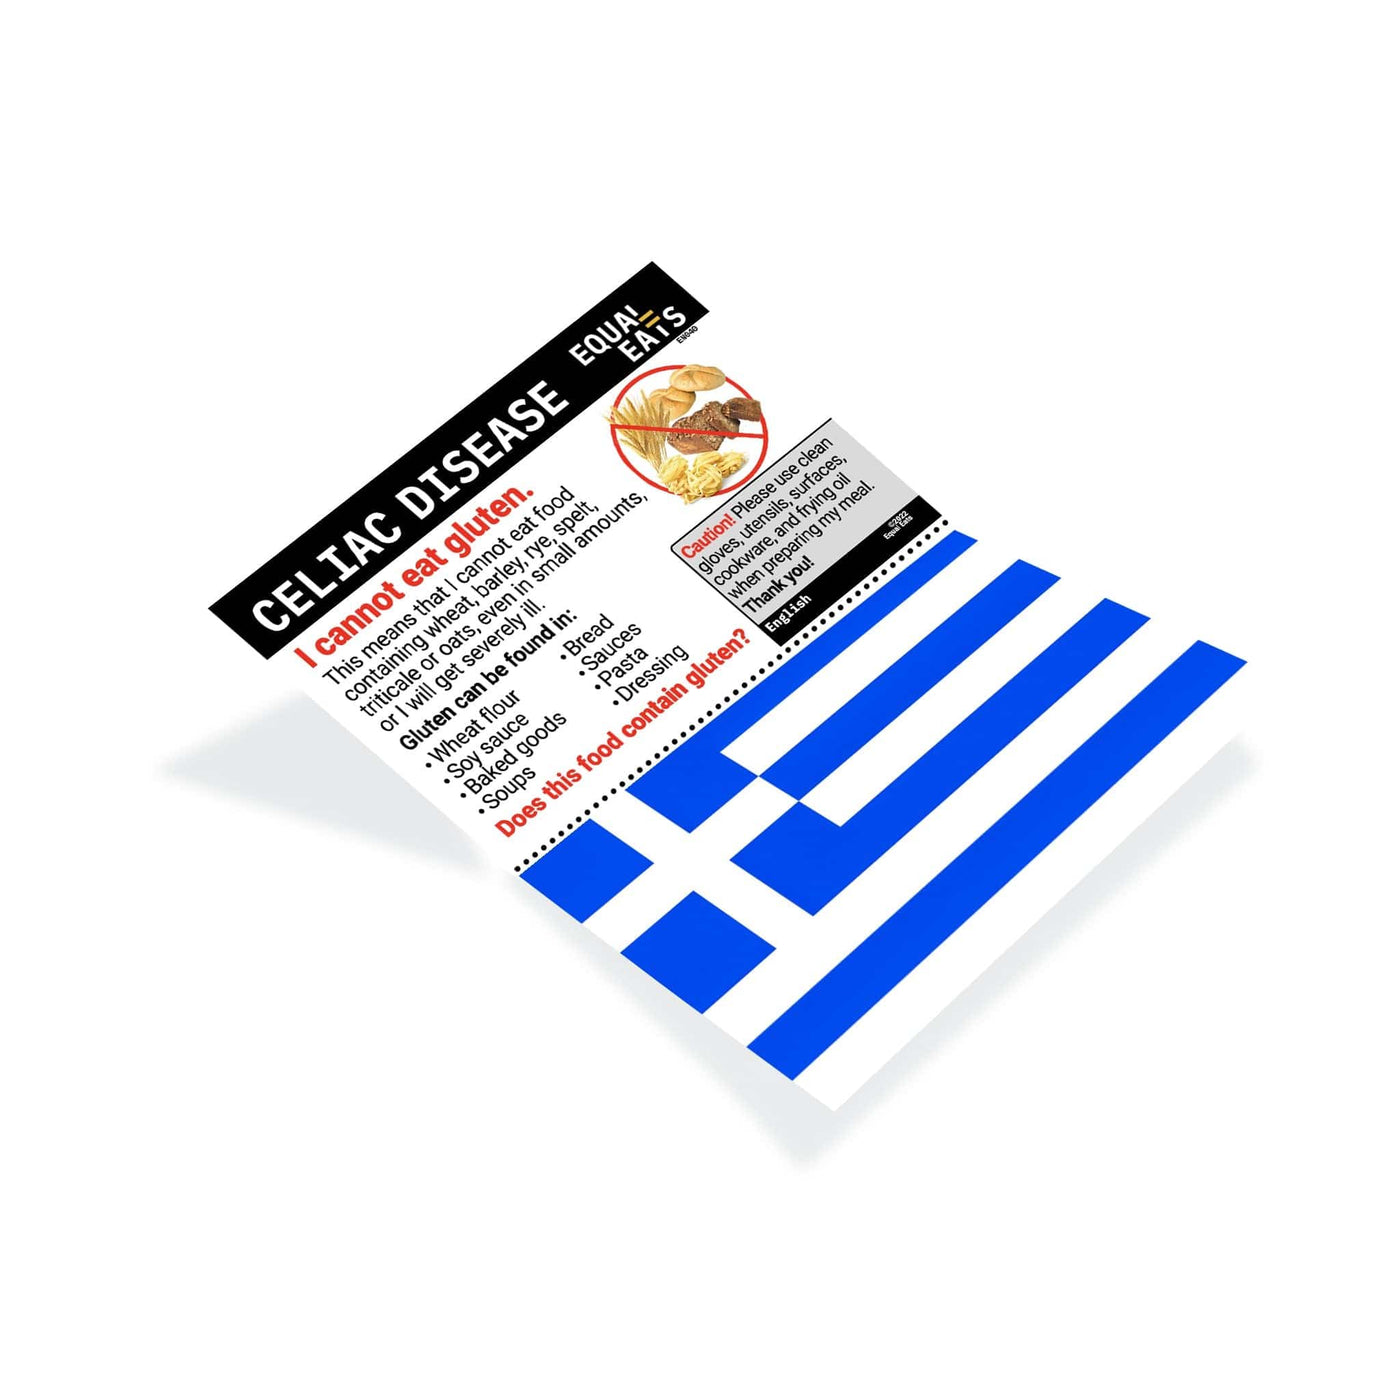 Greek Gluten Free Card